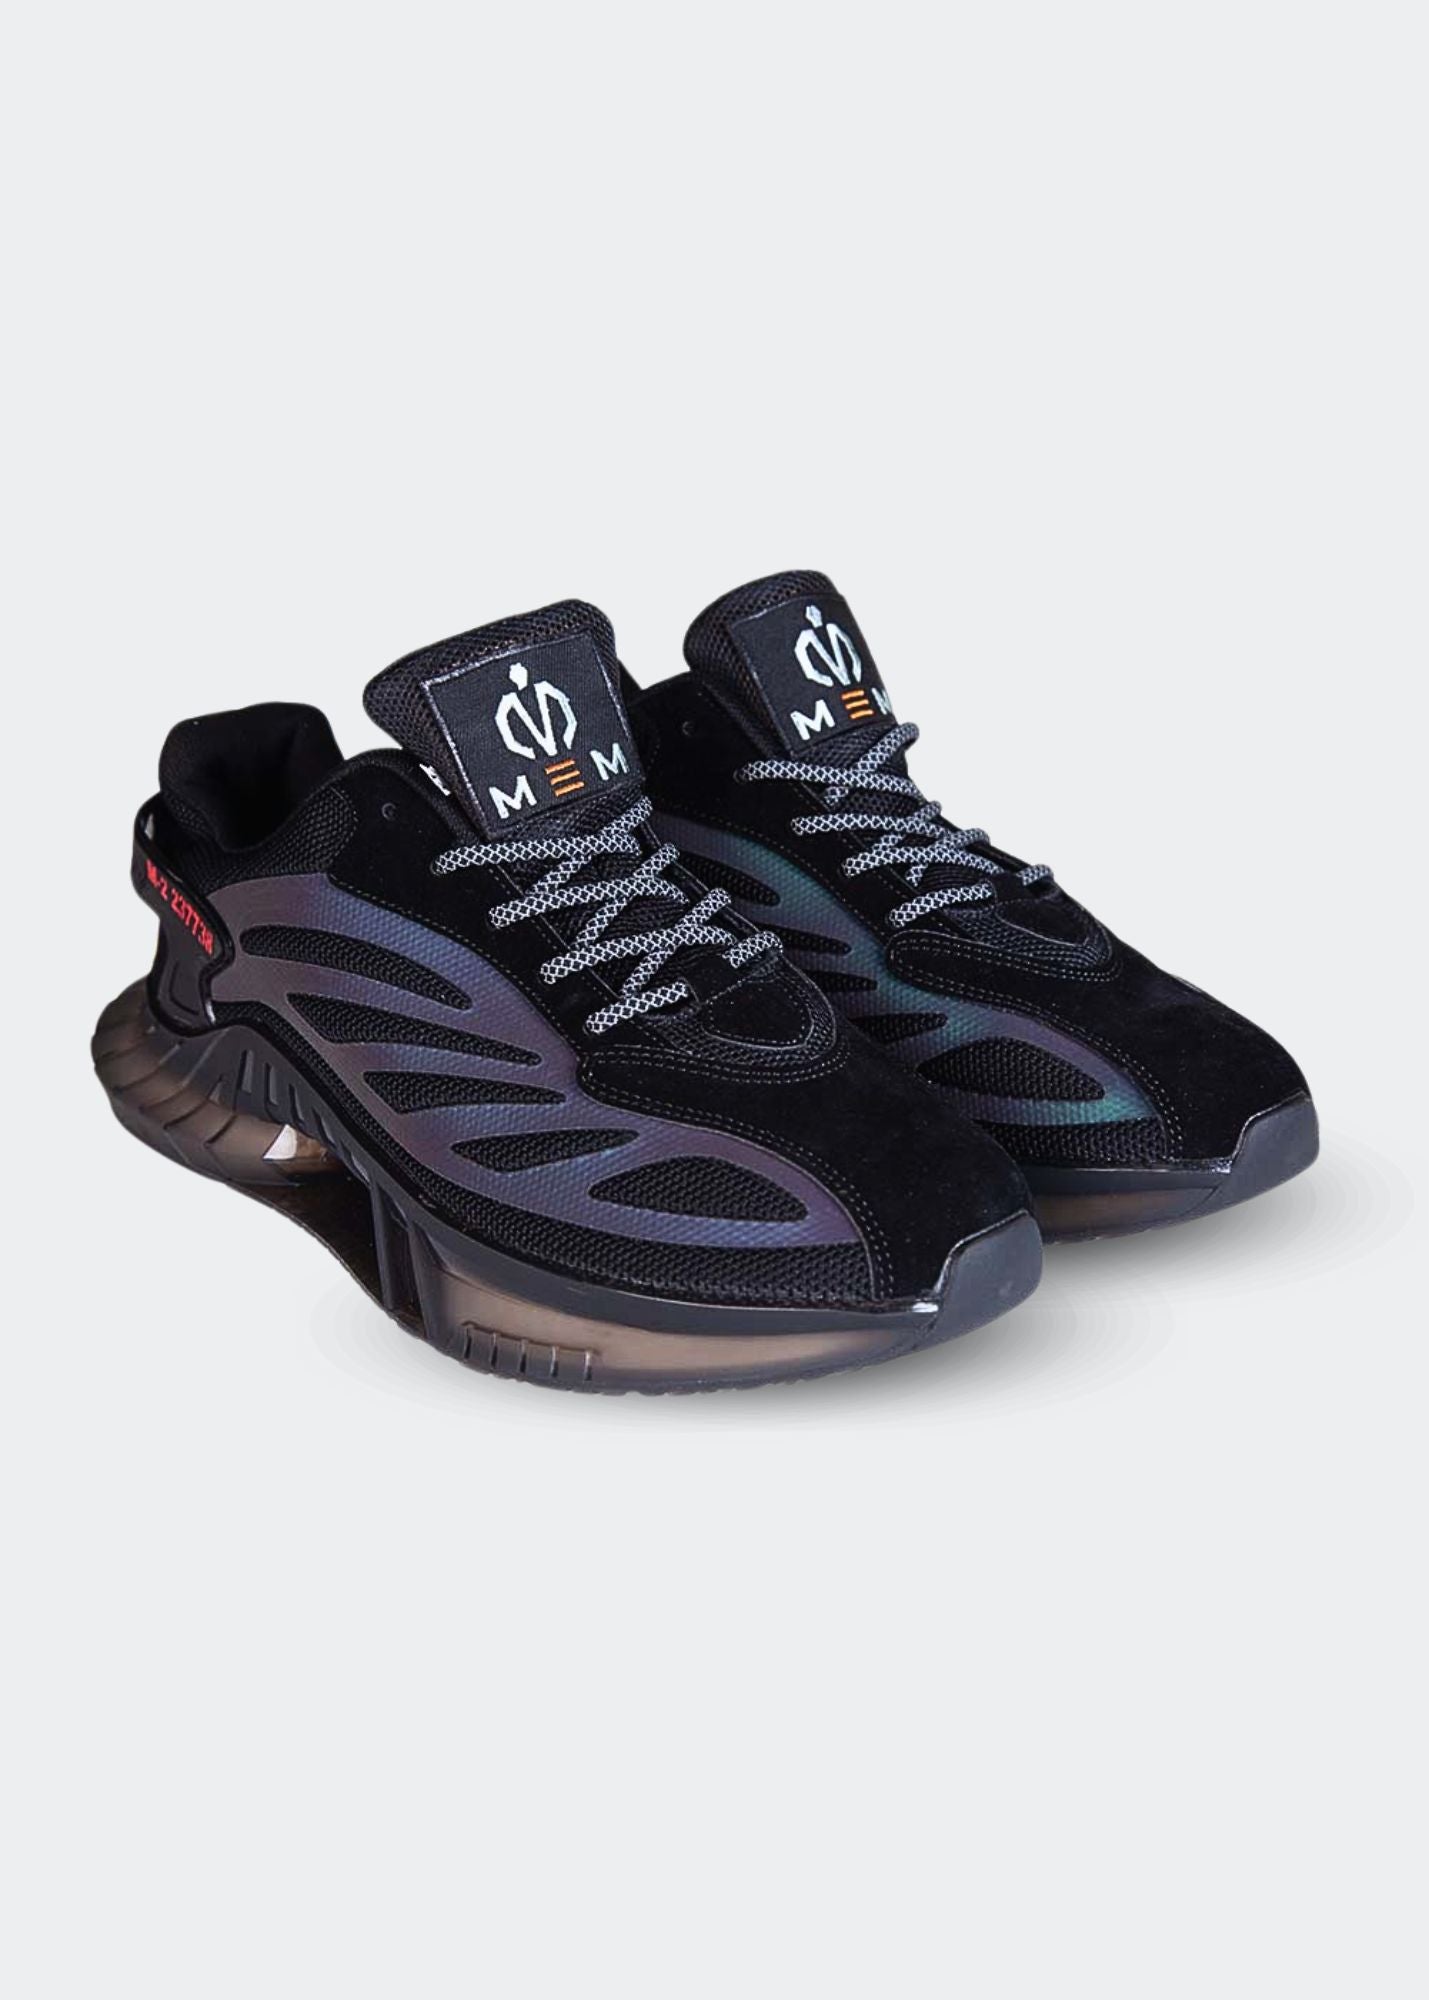 MEM Retro-Reflective Gym Shoes Black